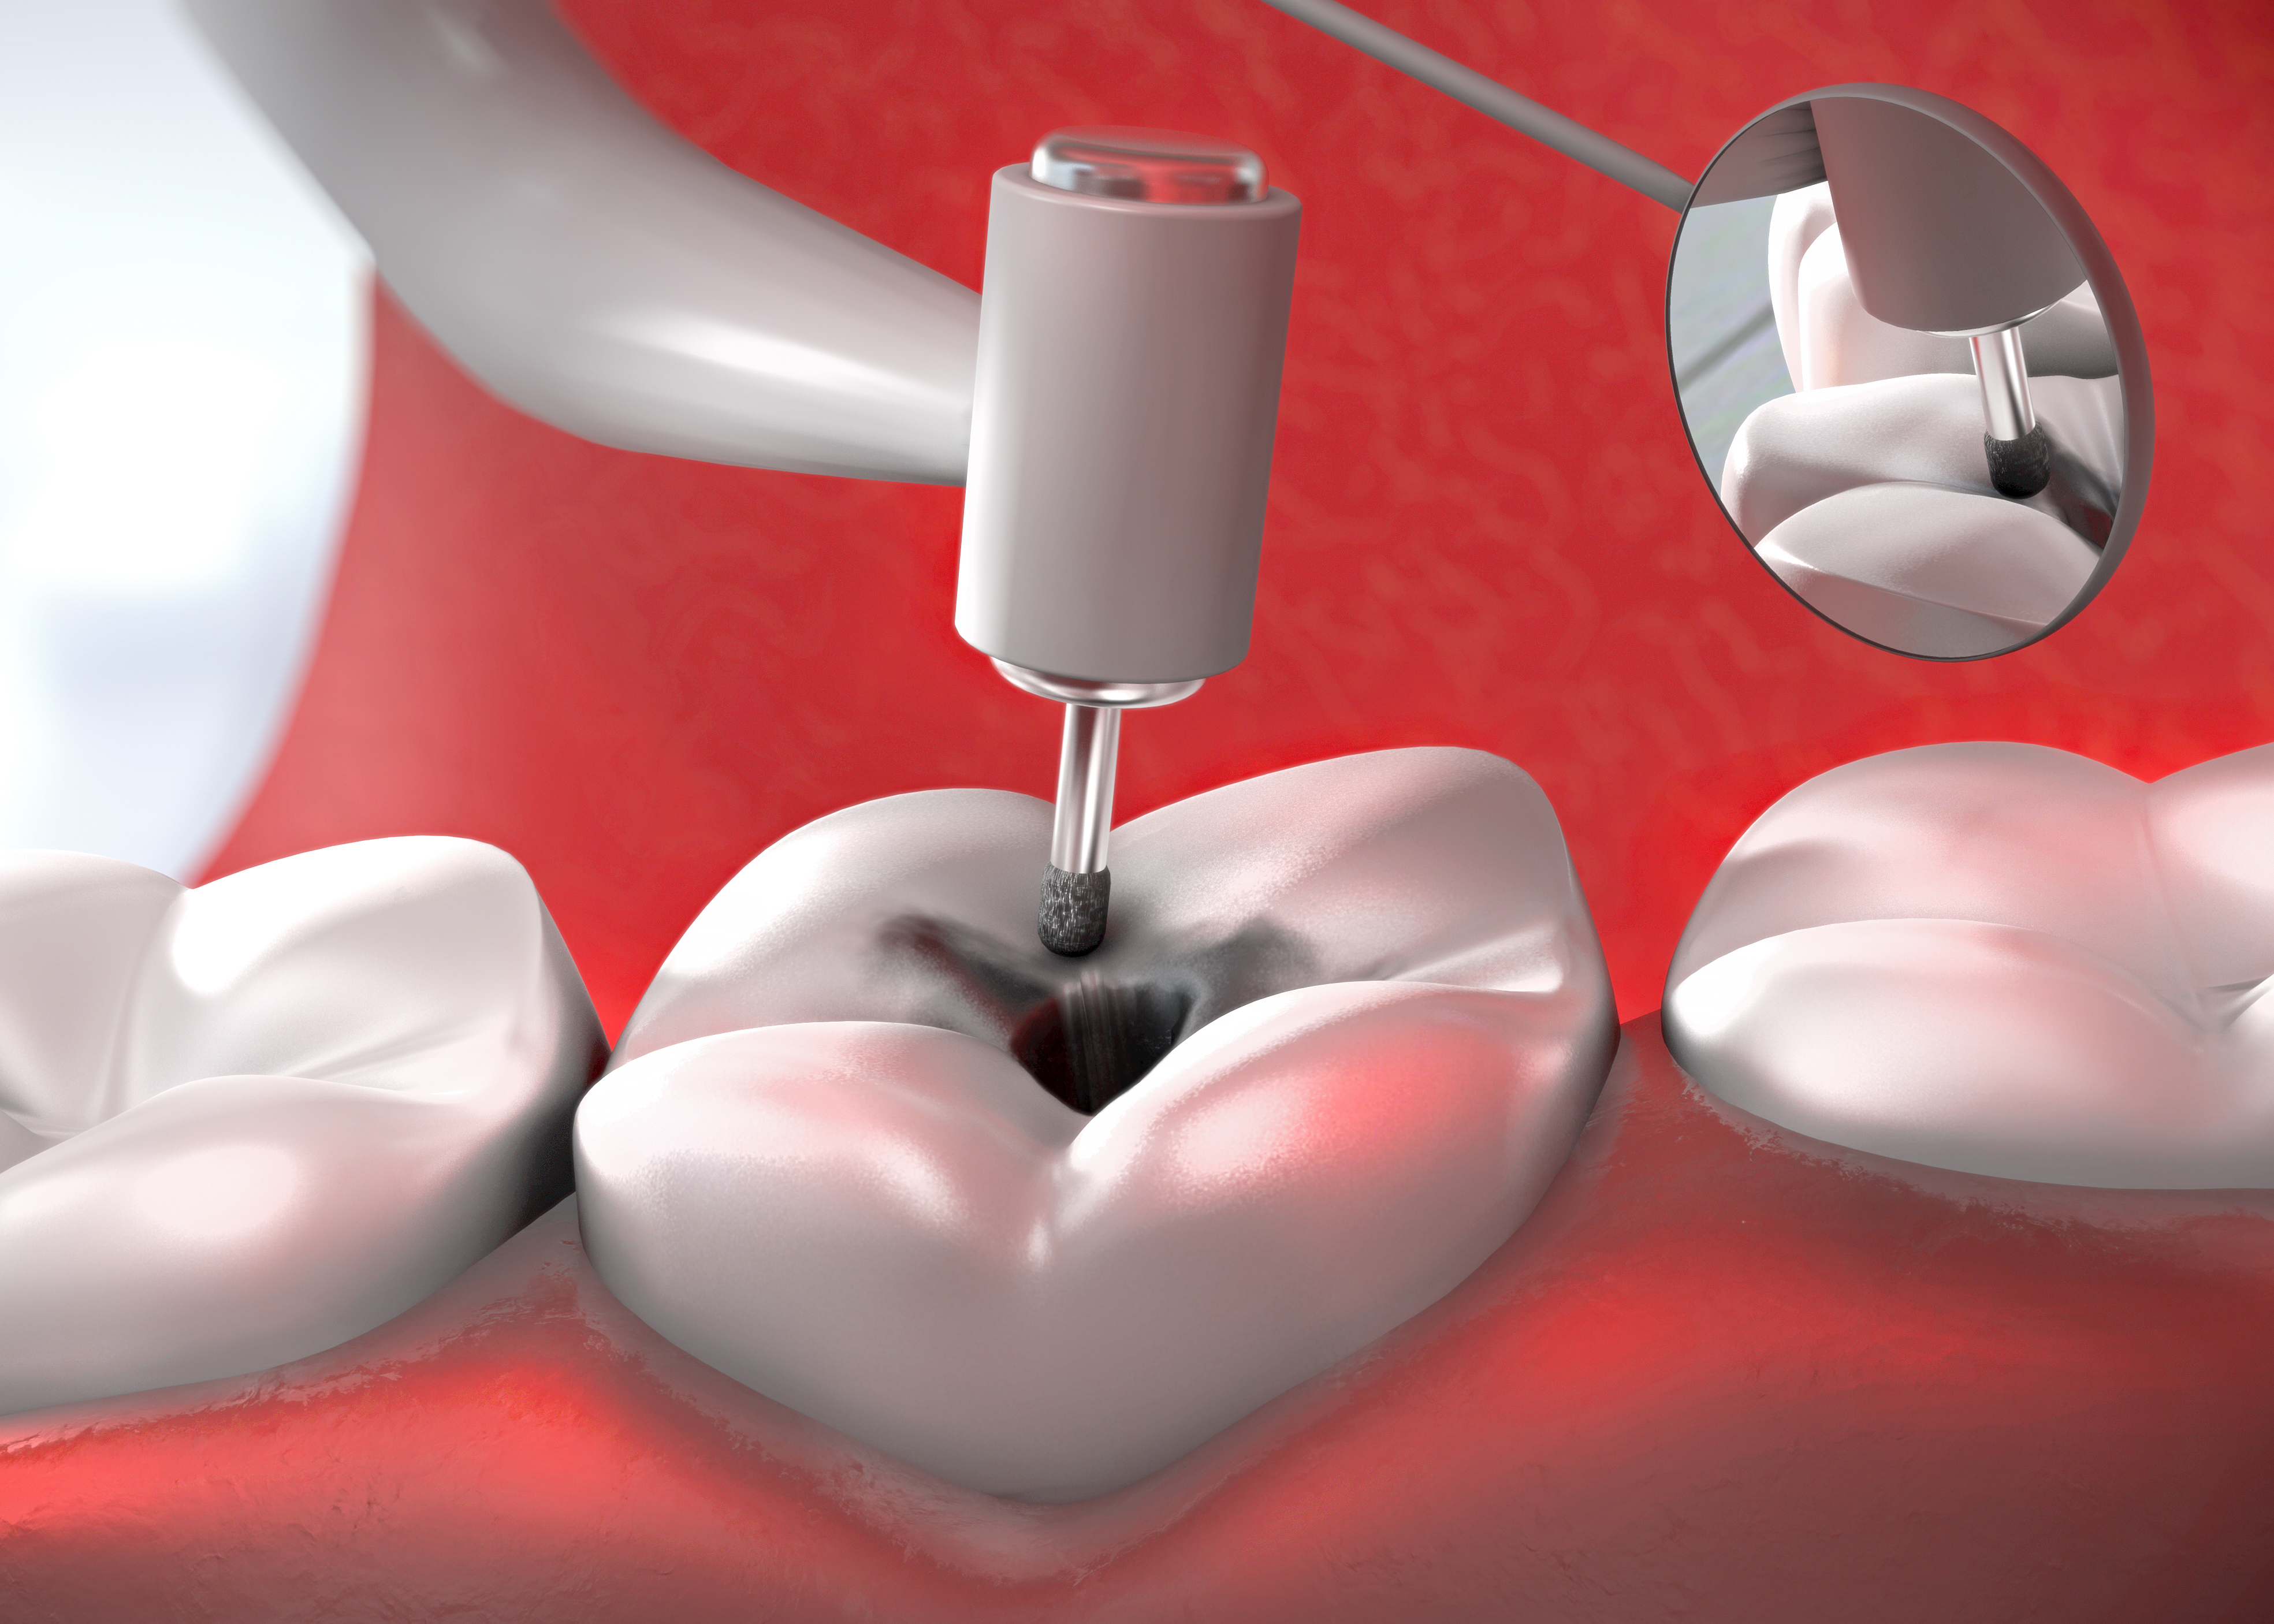 Терапевтическая стоматология пломбирование